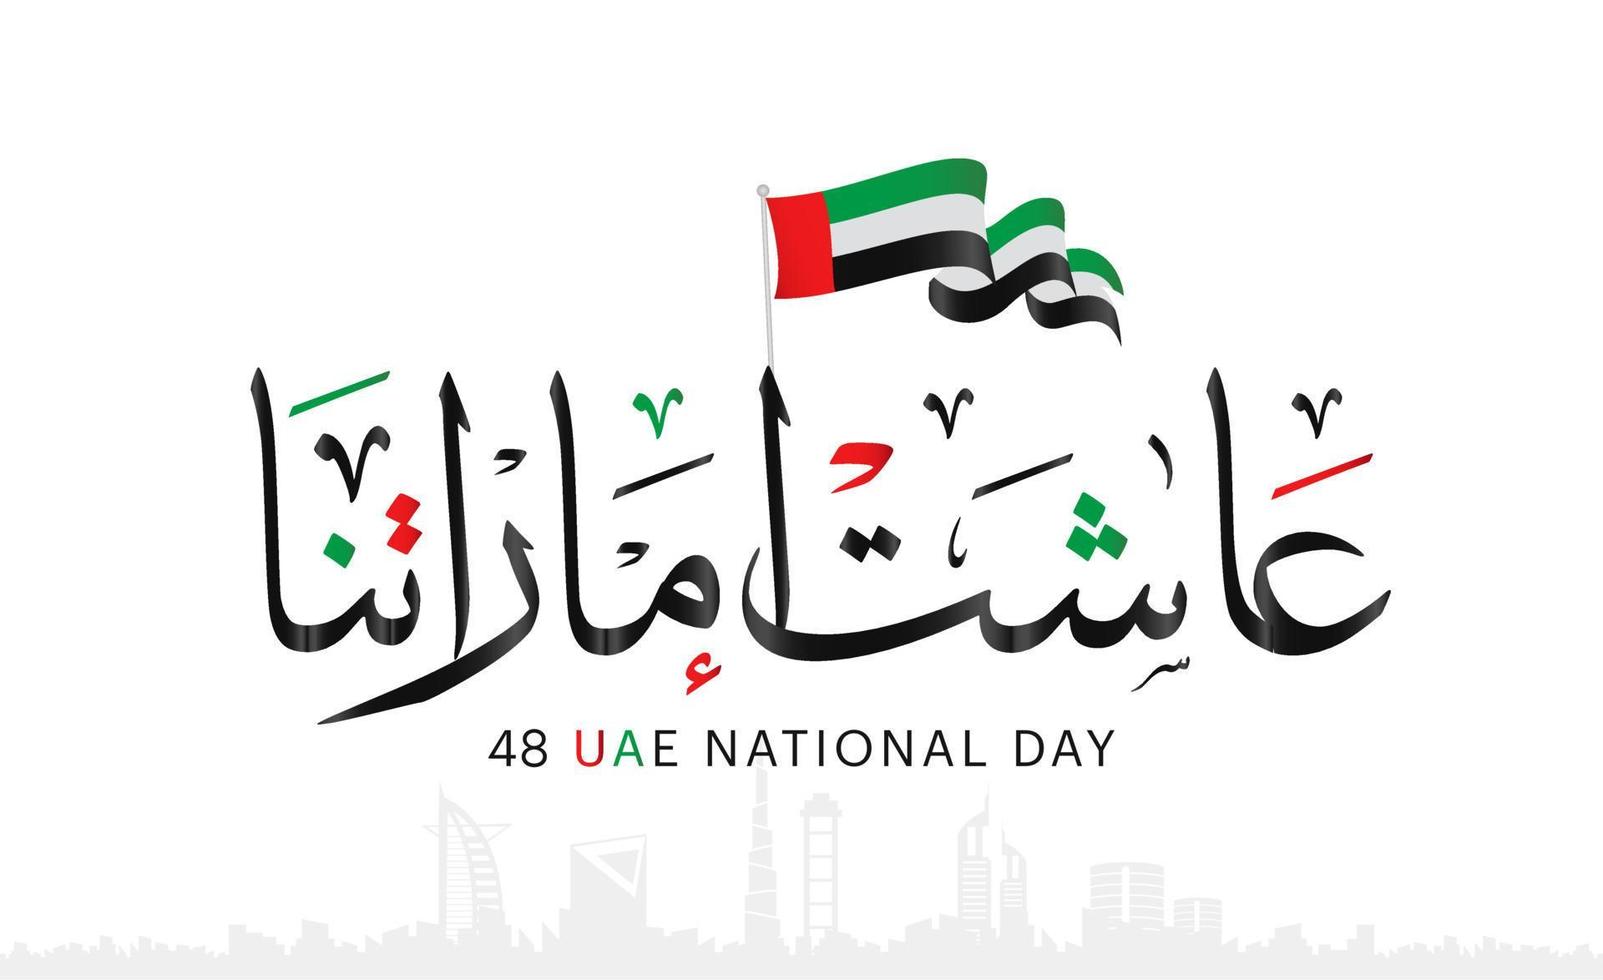 émirats arabes unis fête nationale des émirats arabes unis, esprit de l'union, 48e fête nationale des émirats arabes unis, mémoire du jour du martyr le 30 novembre aux émirats arabes unis vecteur